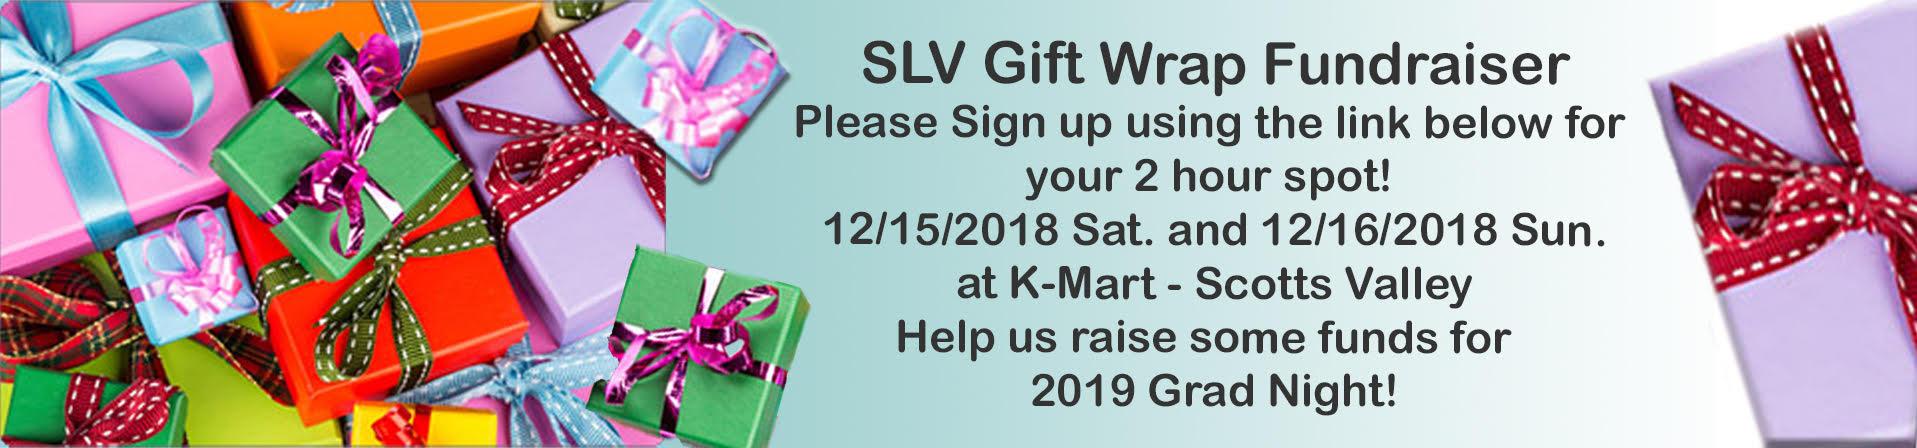 SLV Gift Wrap Fundraiser